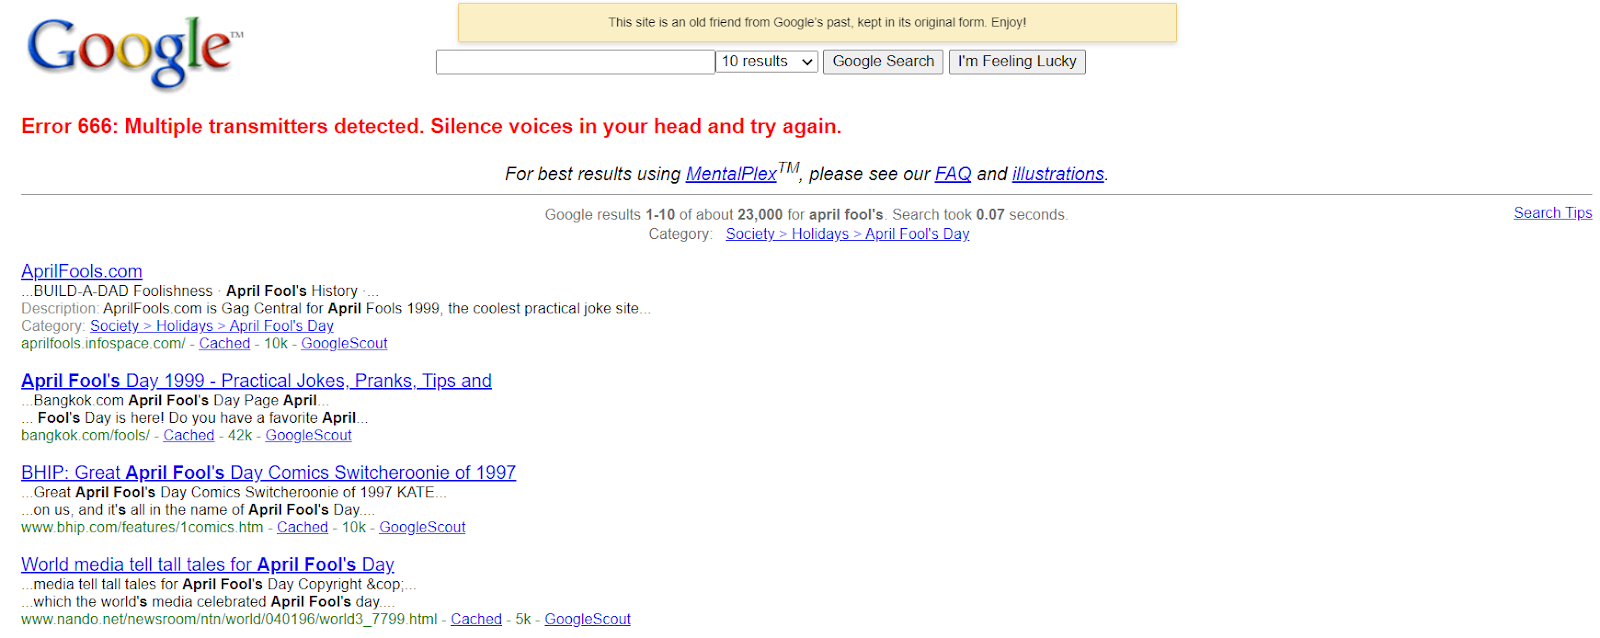 Captura de pantalla del día de los inocentes Google SERP 2000 #1